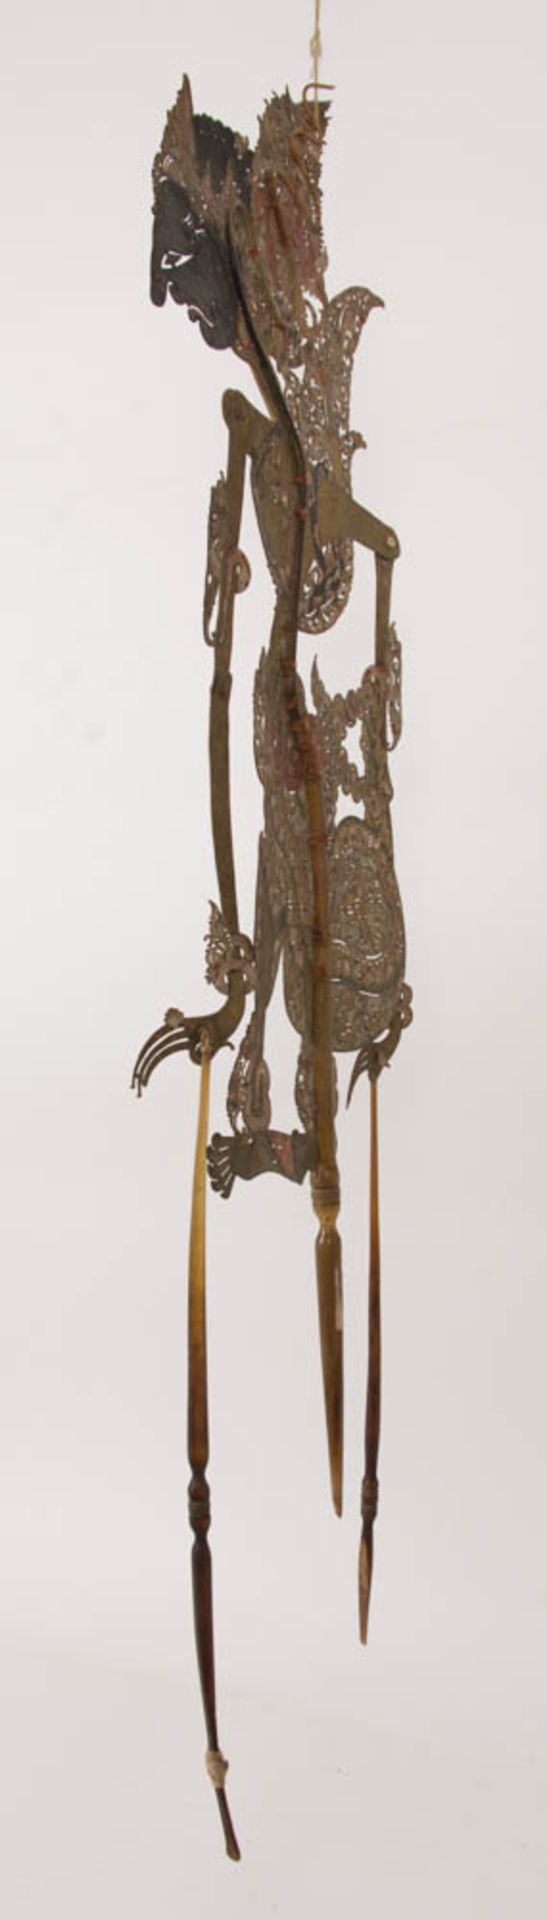 Wayang Kulit Figur, feiner Farbauftrag auf Leder, Yogyakarta Bali, 20. Jh. - Image 5 of 13